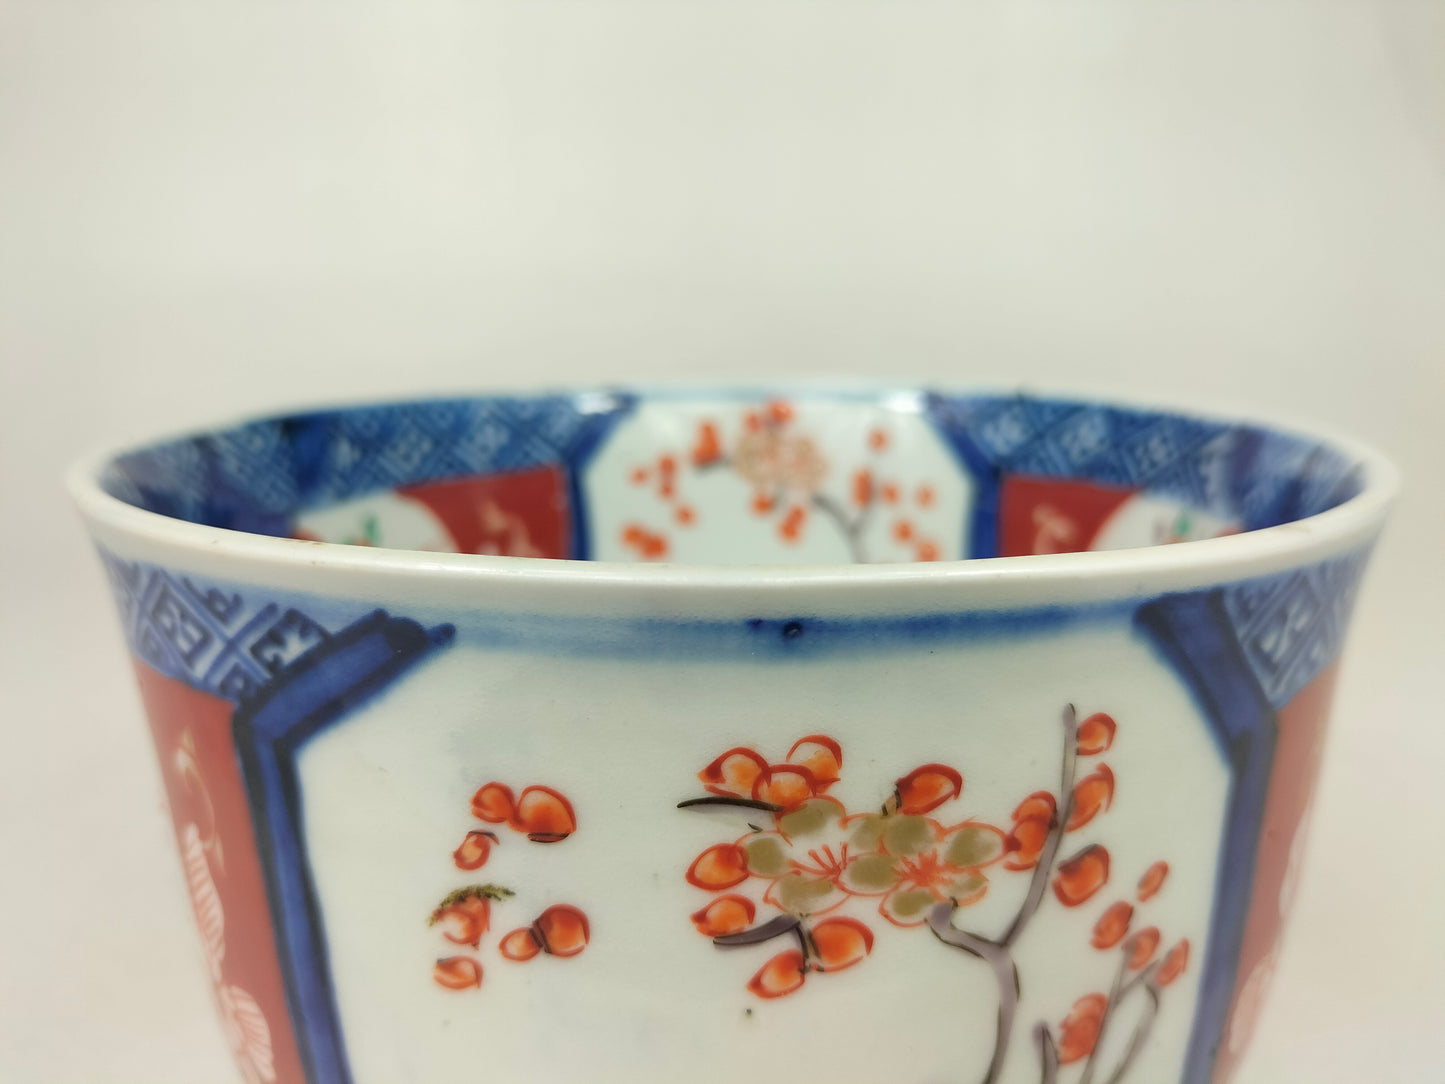 Bát imari cổ Nhật Bản được trang trí họa tiết hoa // Thời Minh Trị - thế kỷ 19